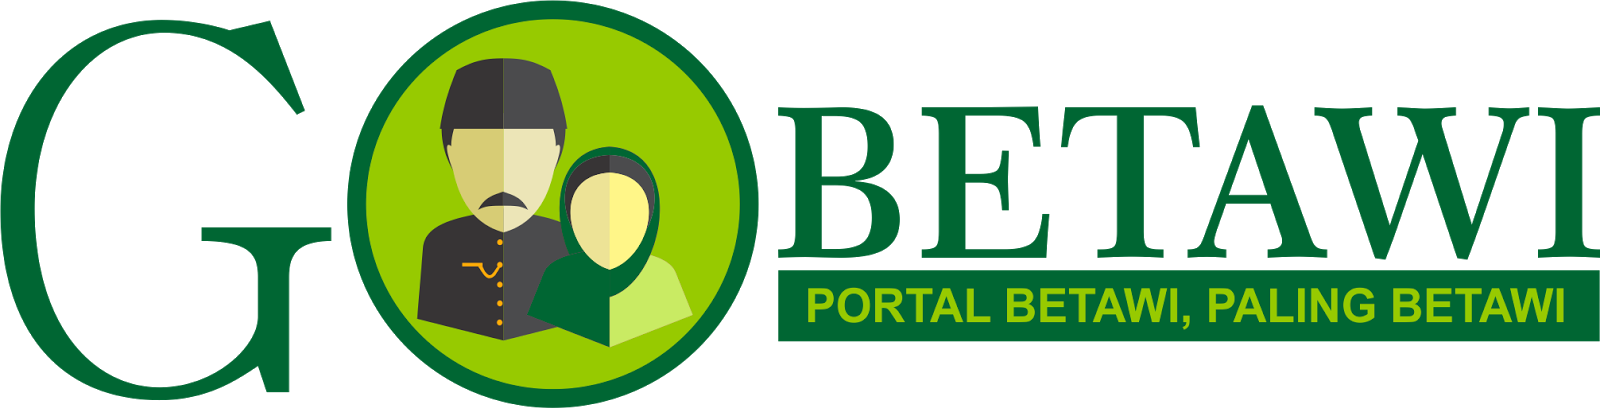 Go Betawi | PORTAL BETAWI, PALING BETAWI